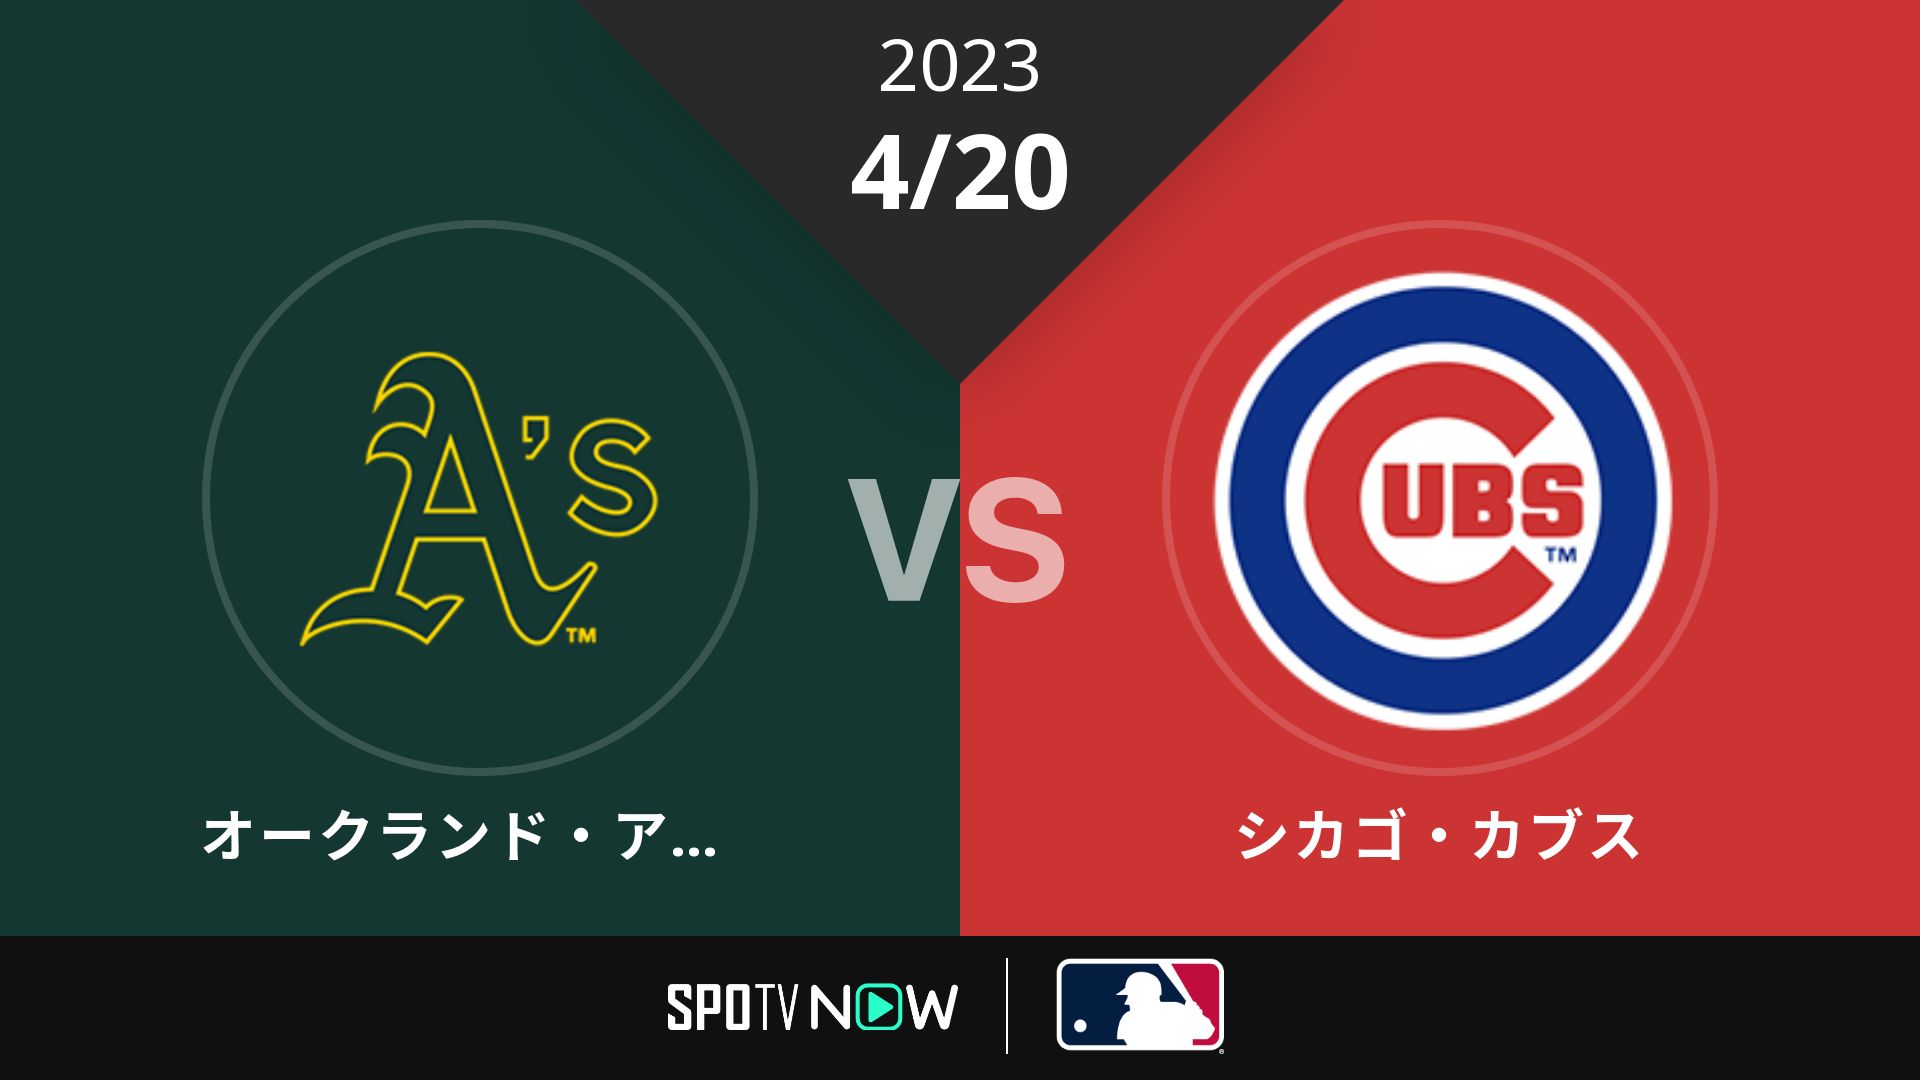 2023/4/20 アスレチックス vs カブス [MLB]